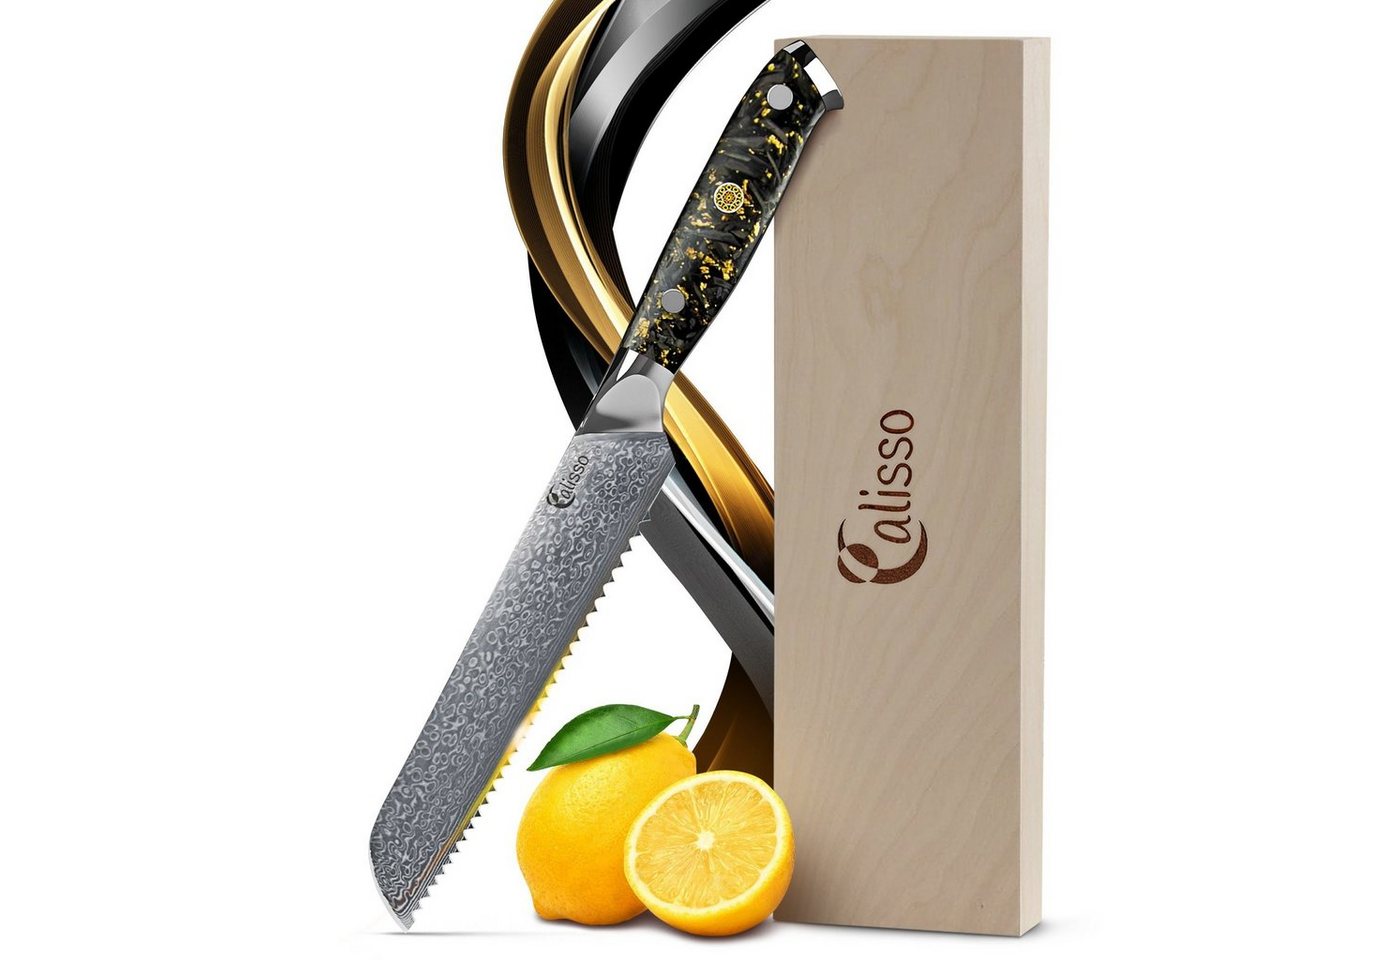 Calisso Brotmesser Küchenmesser Gold & Ash Line Damaststahl von Calisso